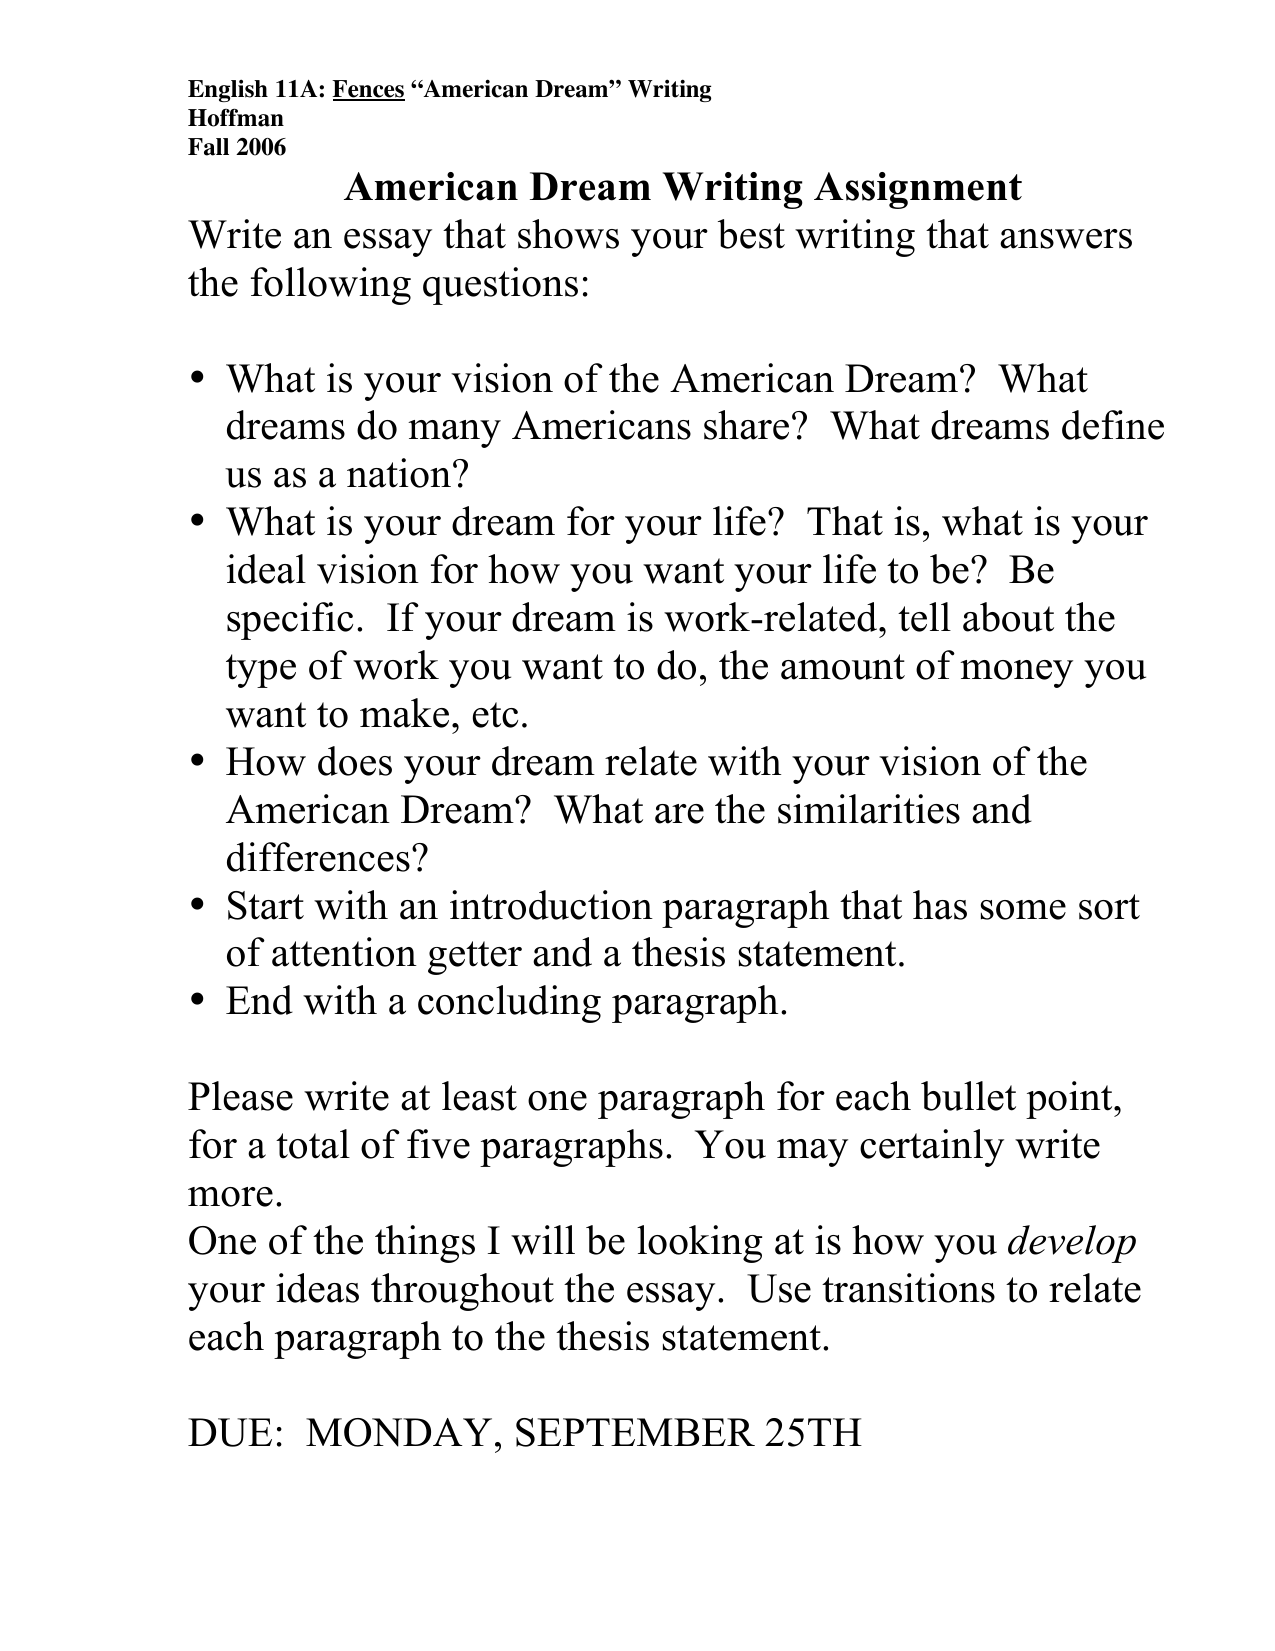 American Dream Essay ⋆ Essays on Controversial Topics ⋆ EssayEmpire